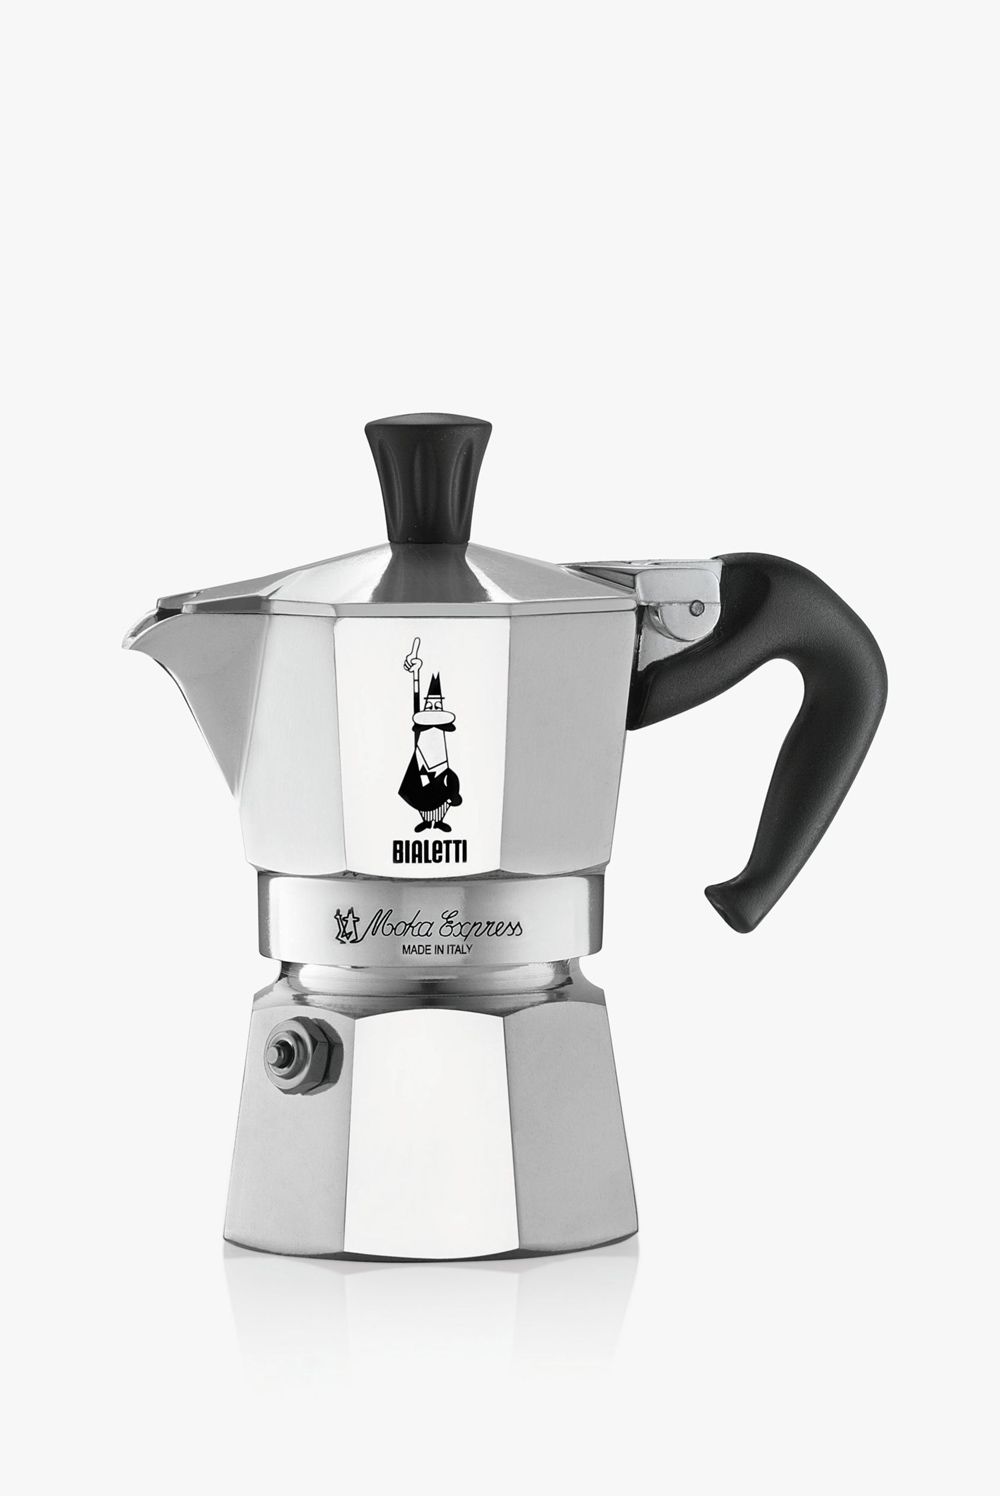 Bialetti 6 Cup Hob Espresso Maker, £46